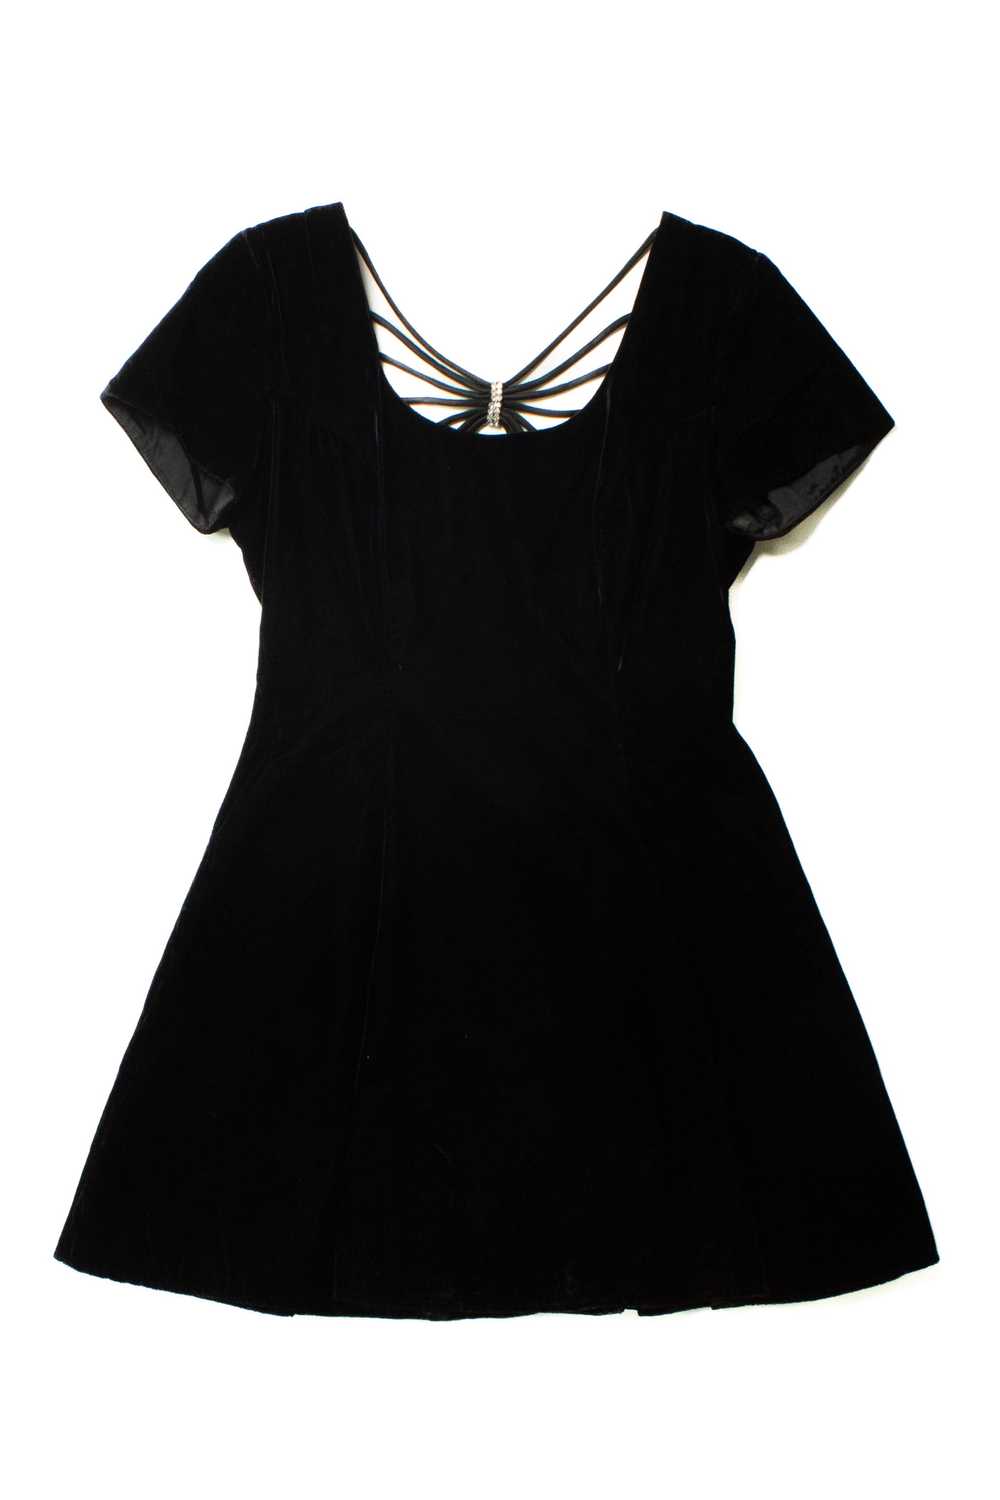 Vintage Rhapsody Black Velvet Dress - image 7